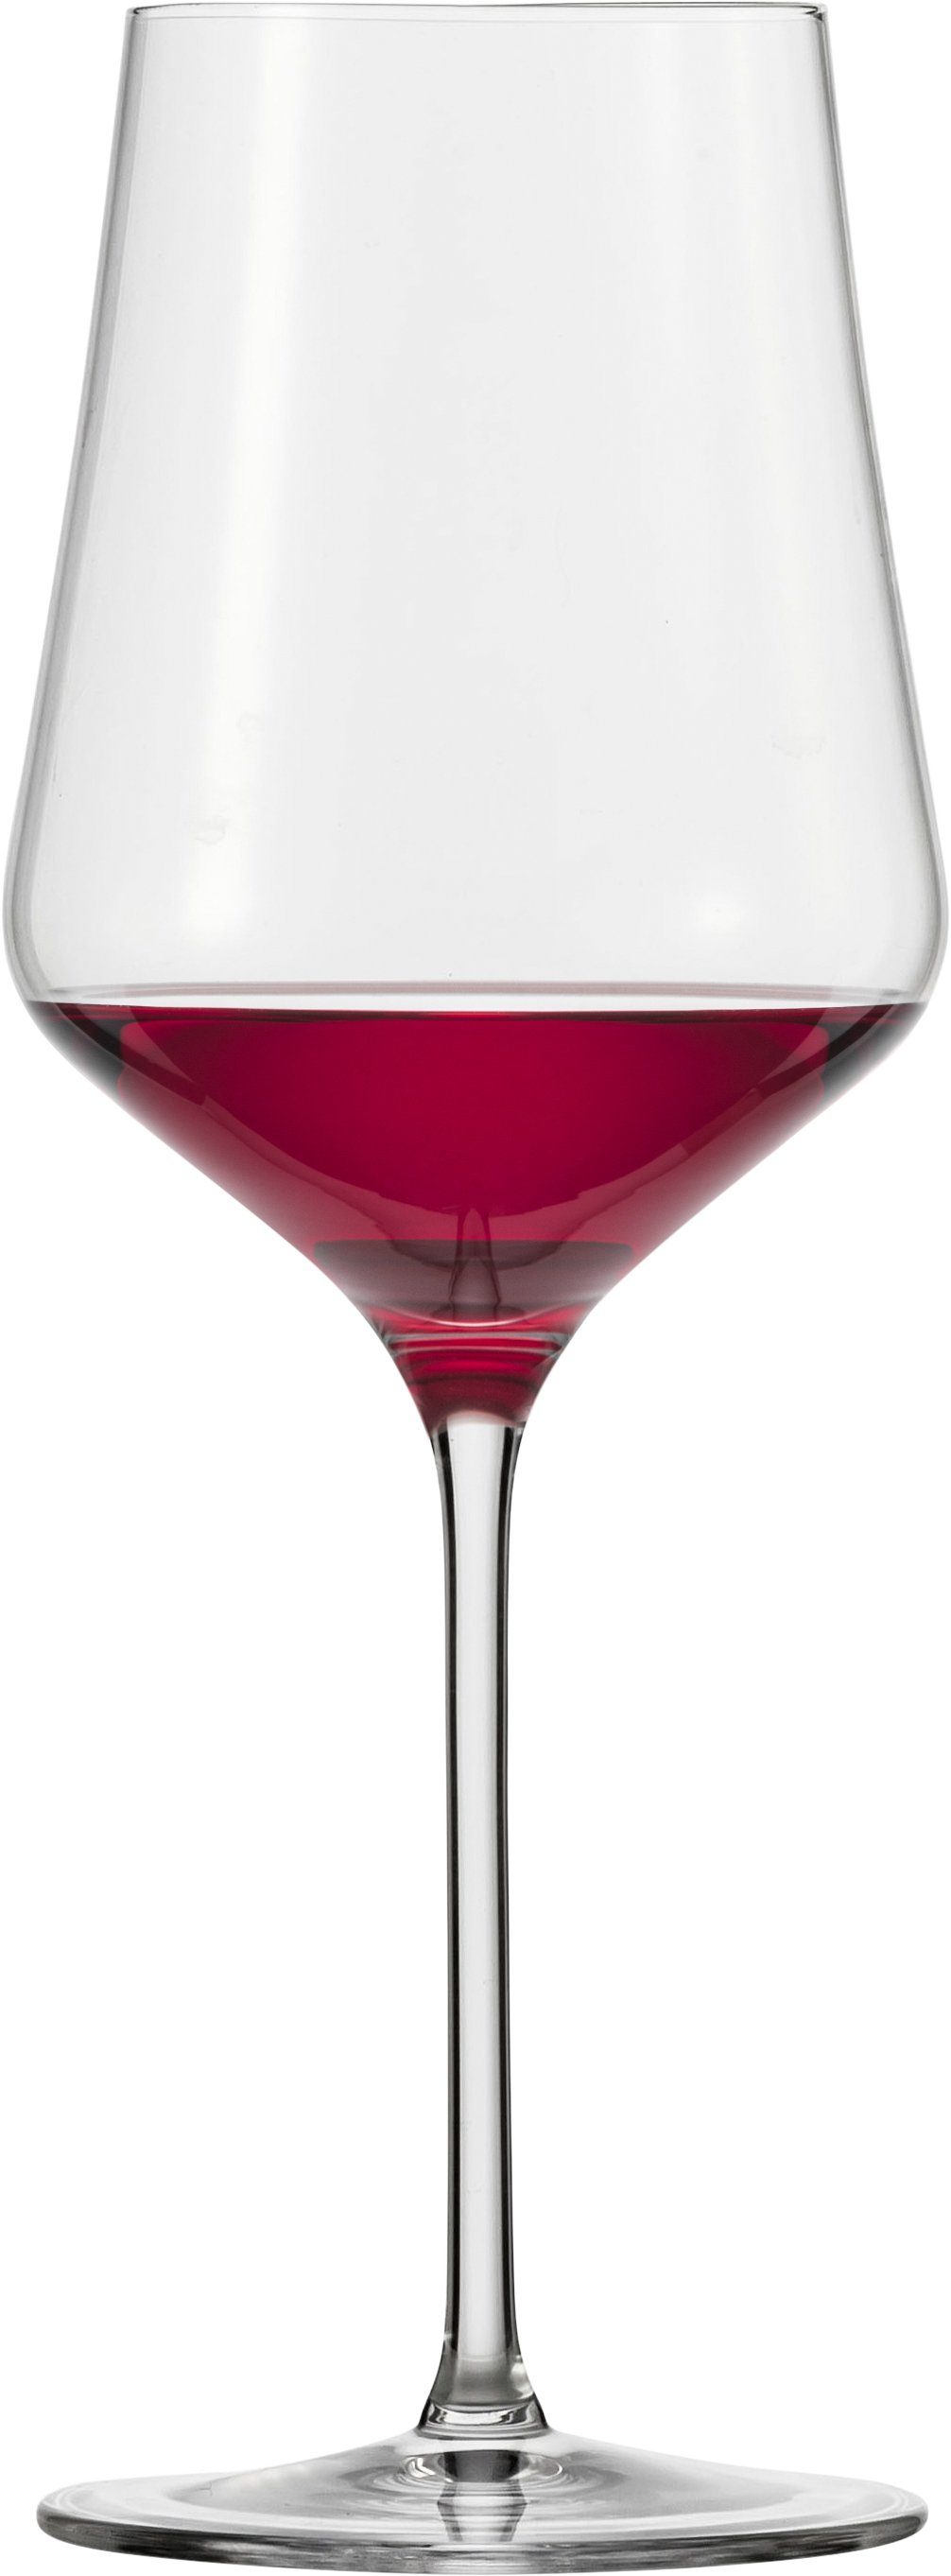 Eisch Rotweinglas Sky SensisPlus, Kristallglas, bleifrei, 490 ml, 4-teilig,  Maschinell gefertigt, mit gezogenem Stiel, bleifrei